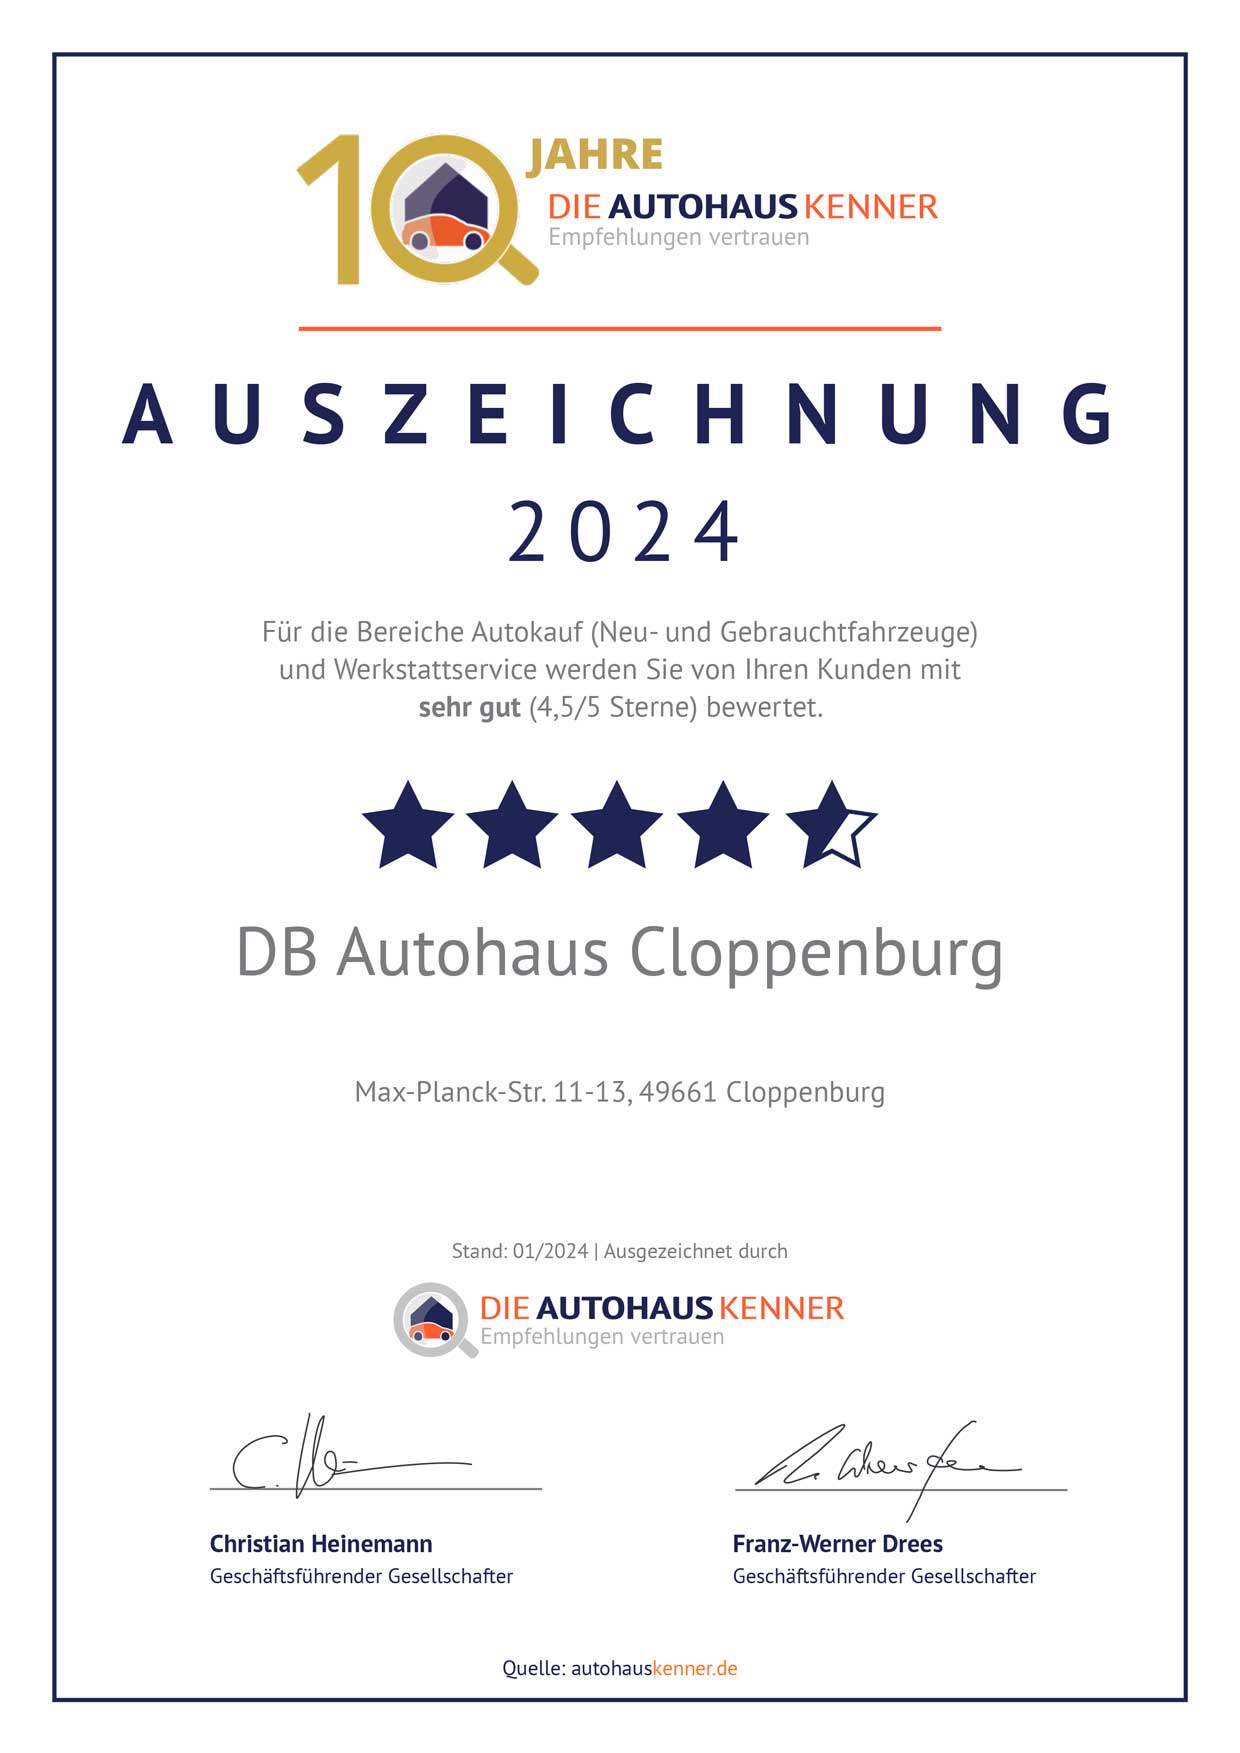 Auszeichnung von Autohauskenner für DB Autohaus Cloppenburg